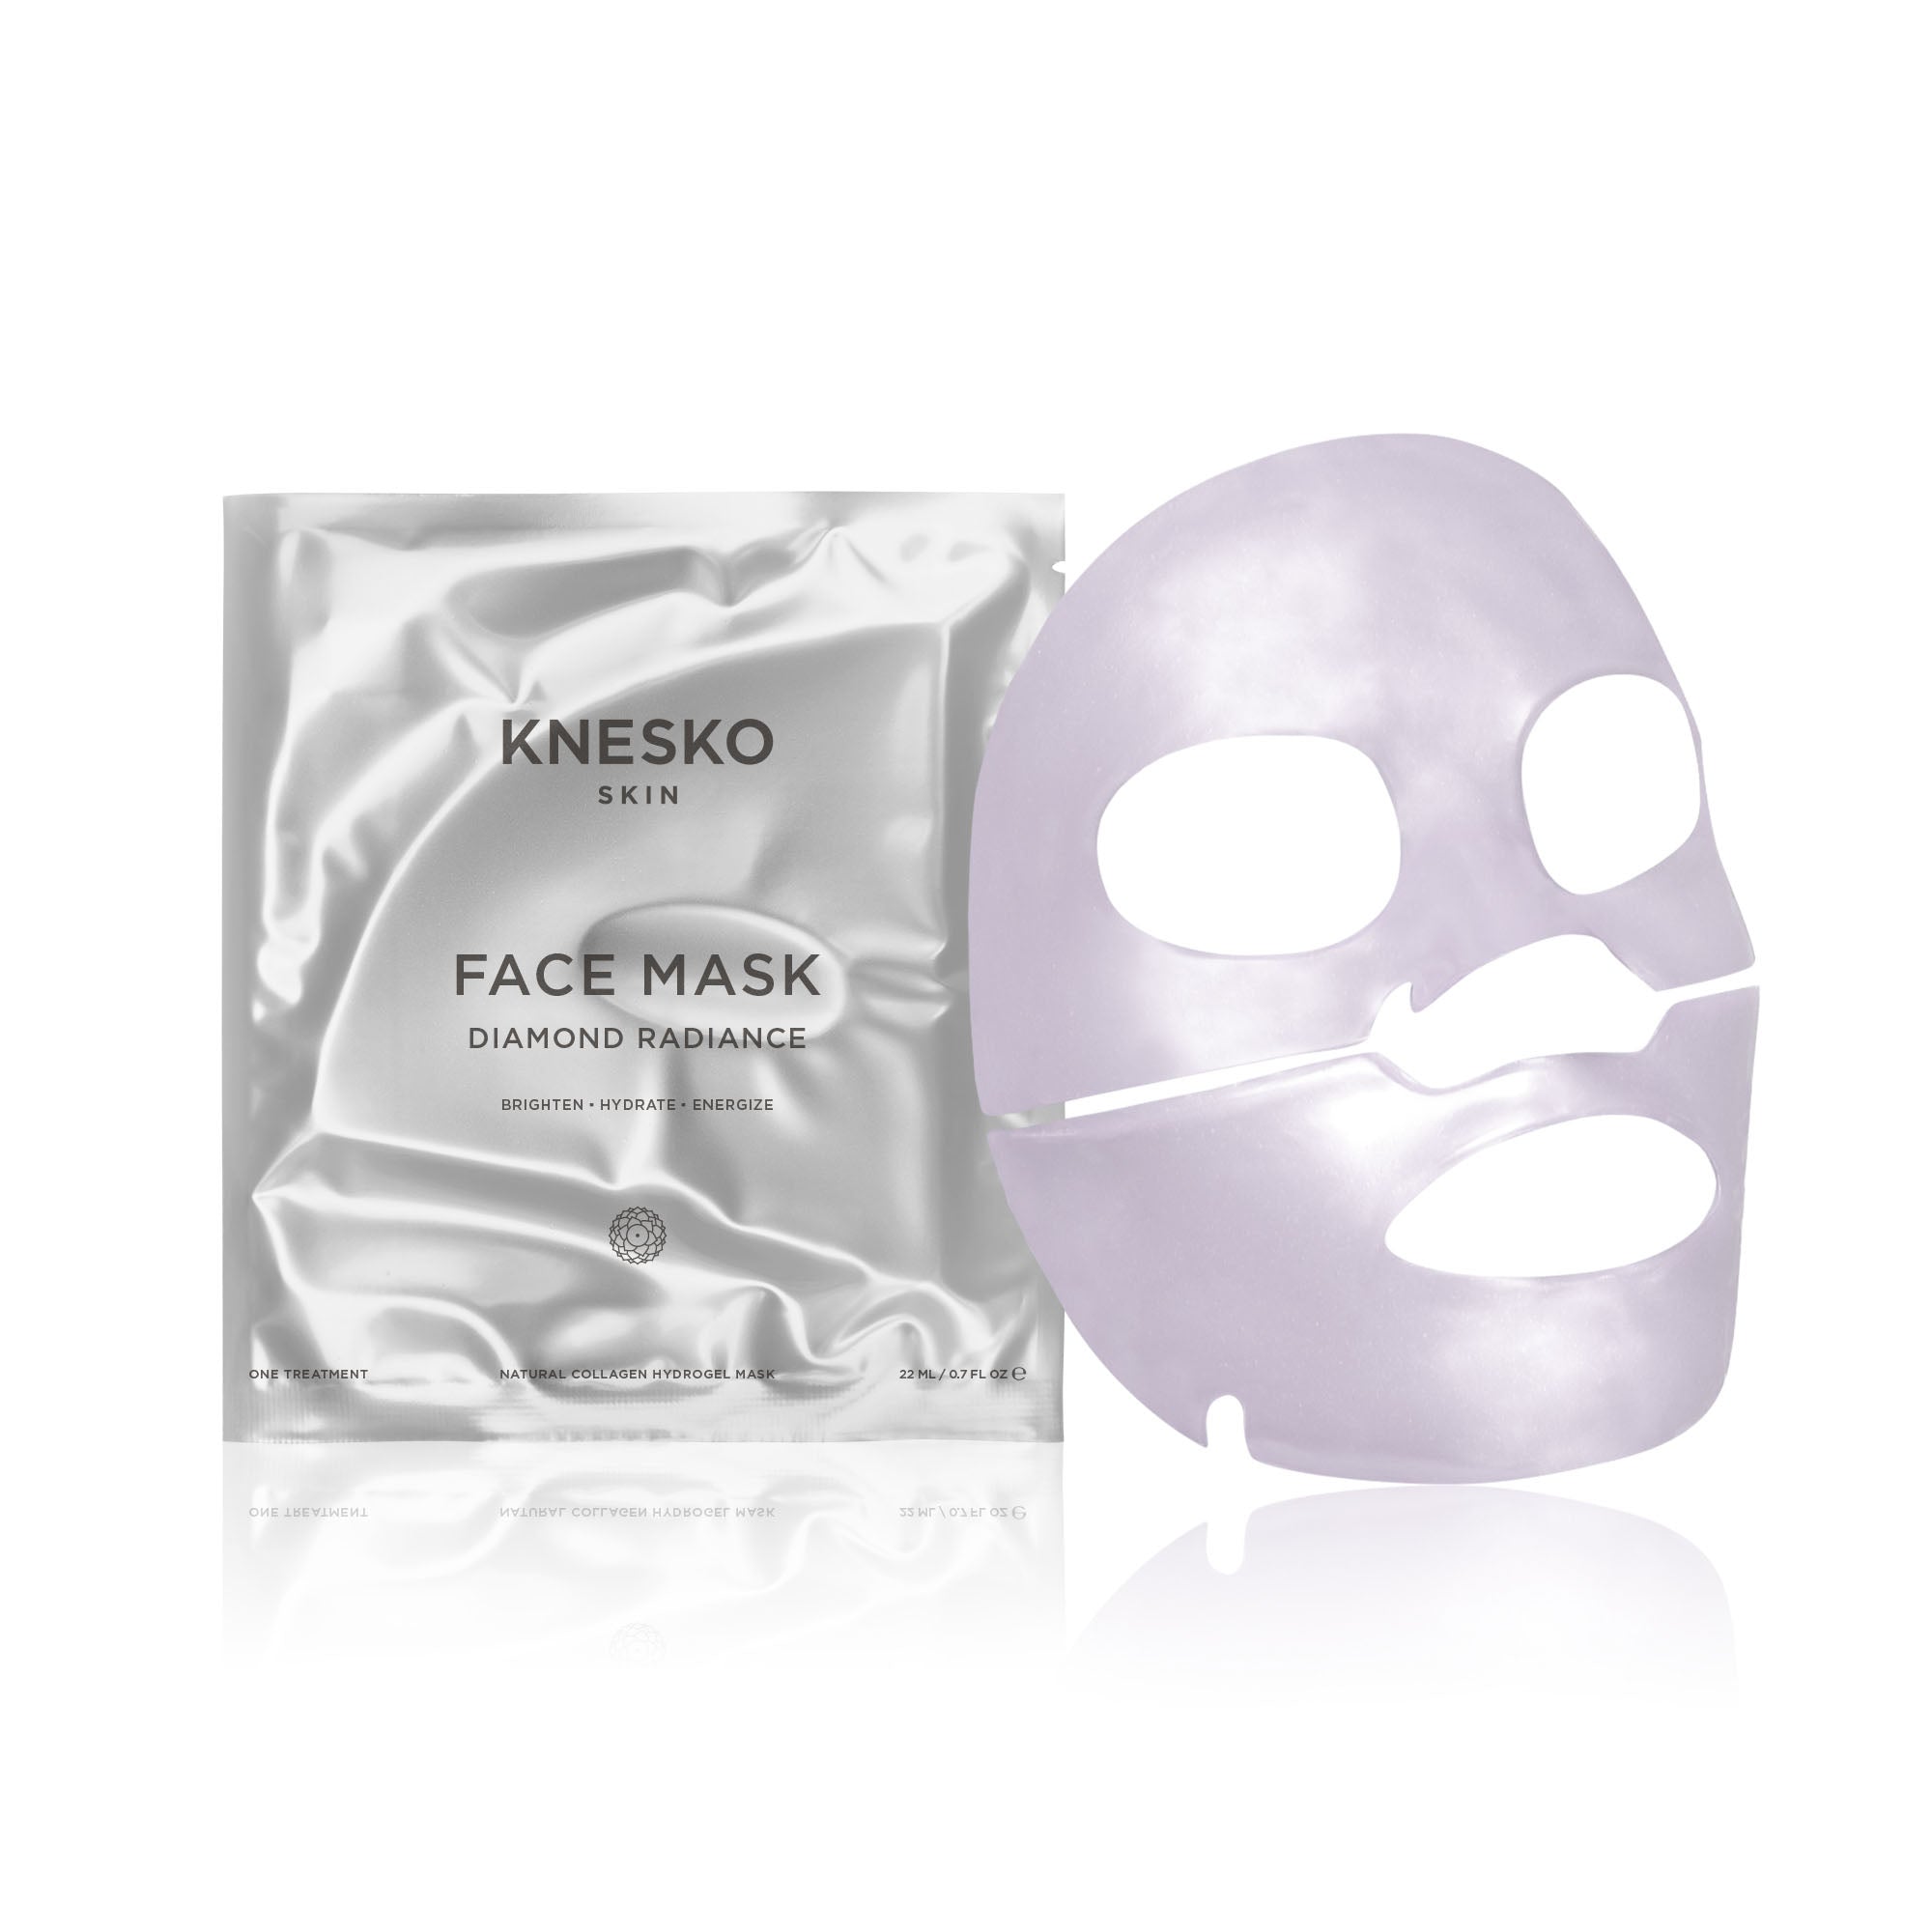 Diamond Radiance Face Mask - 4 Pack | Knesko